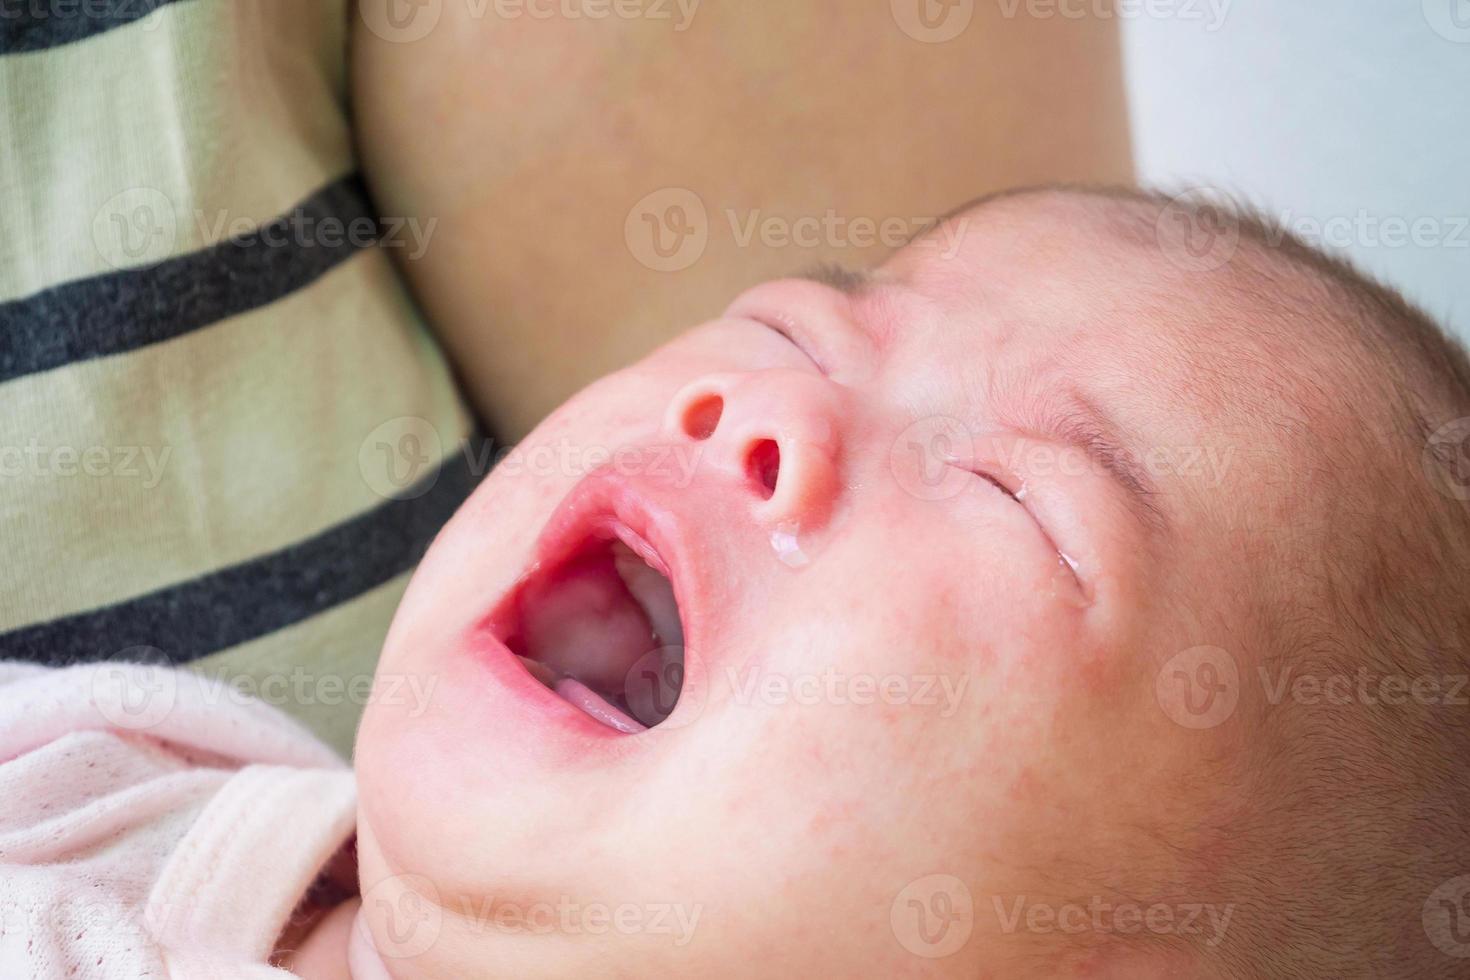 bébé nouveau-né qui pleure photo